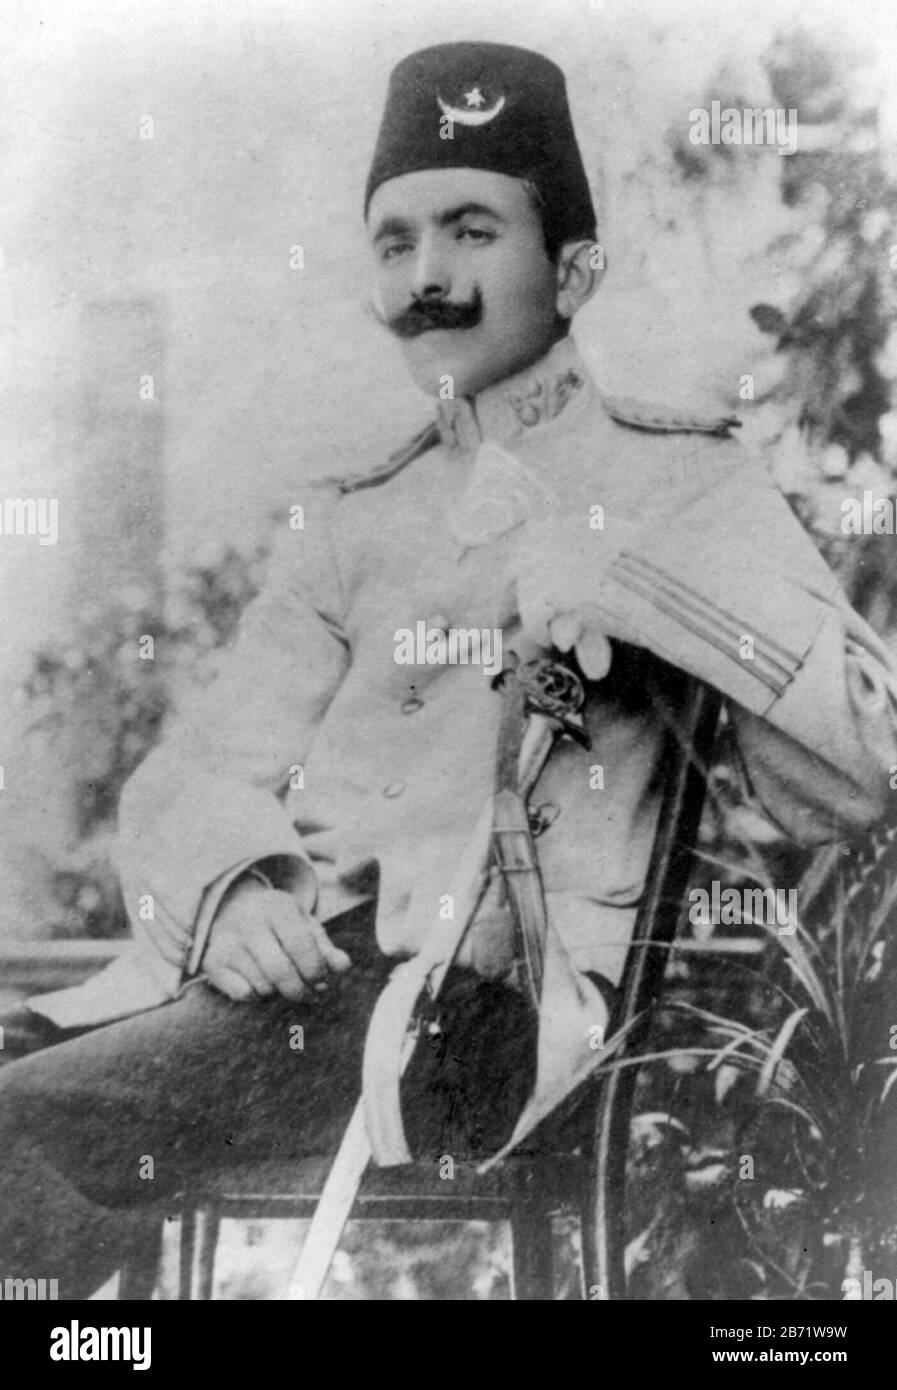 Enver Pasha, Ismail Enver Pasha (1881 - 1922) osmanischer Militäroffizier und Führer der Jungen Türkischen Revolution von 1908. Stockfoto